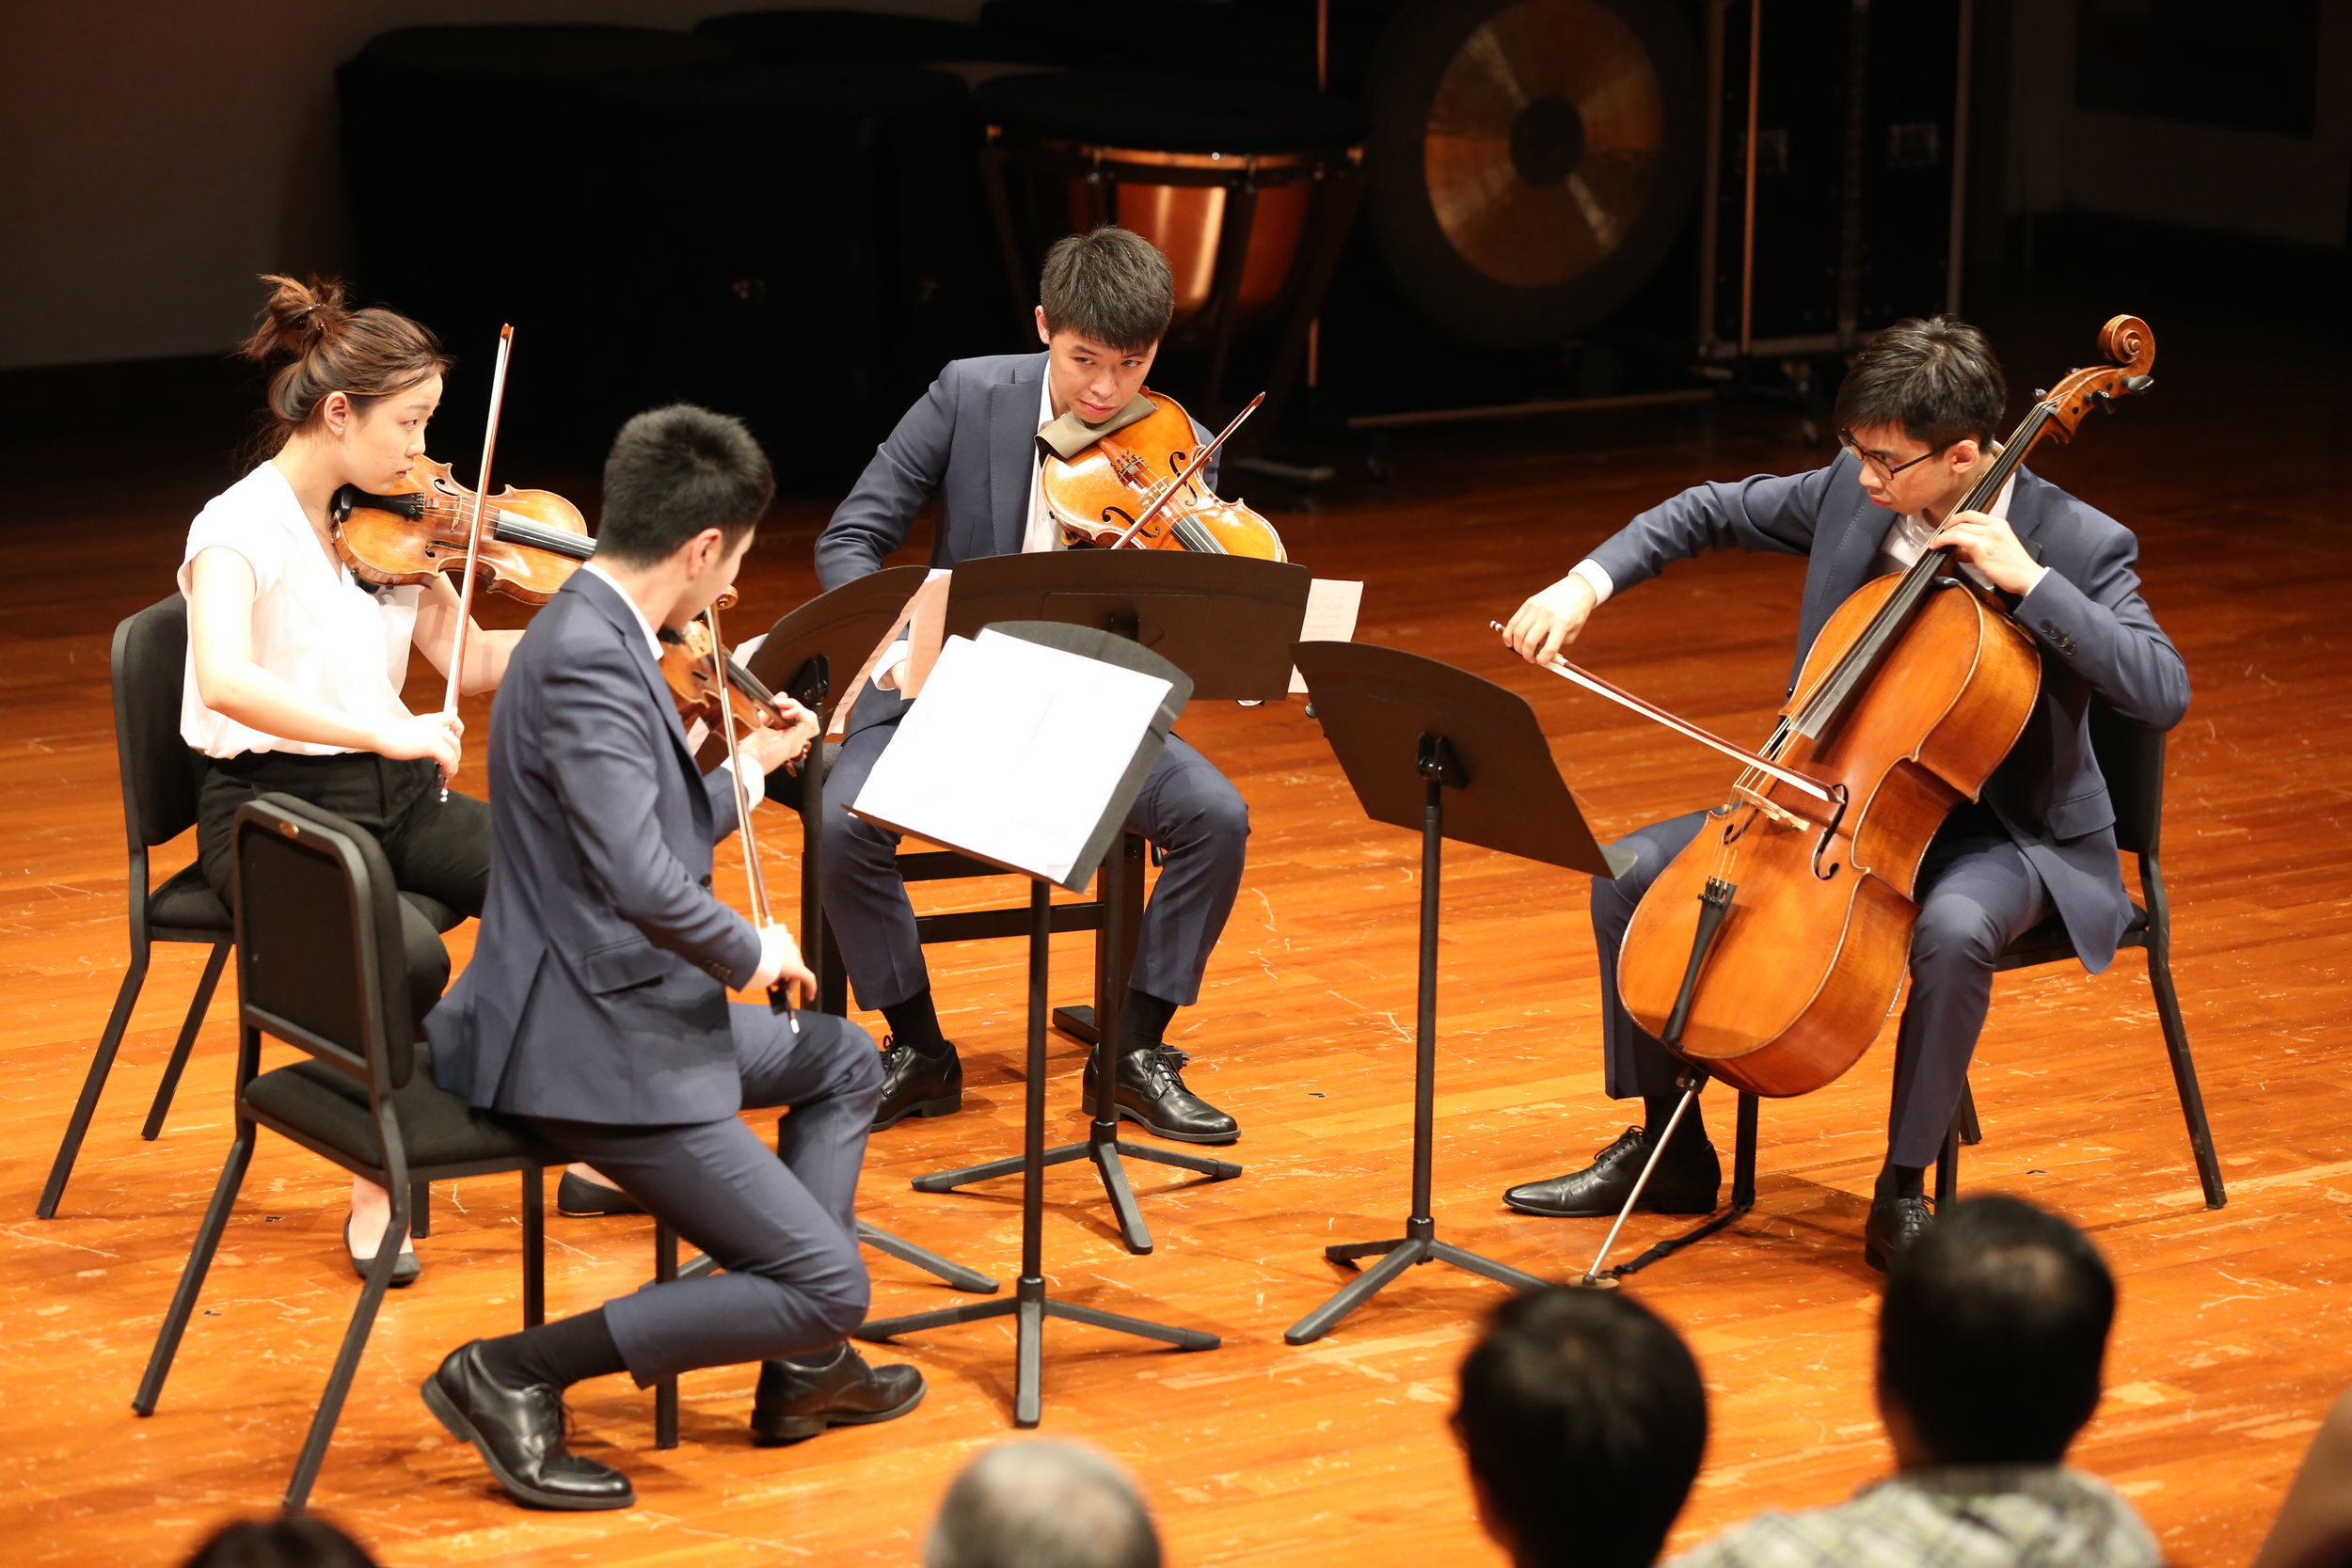 Concert at HKAPA (2018)